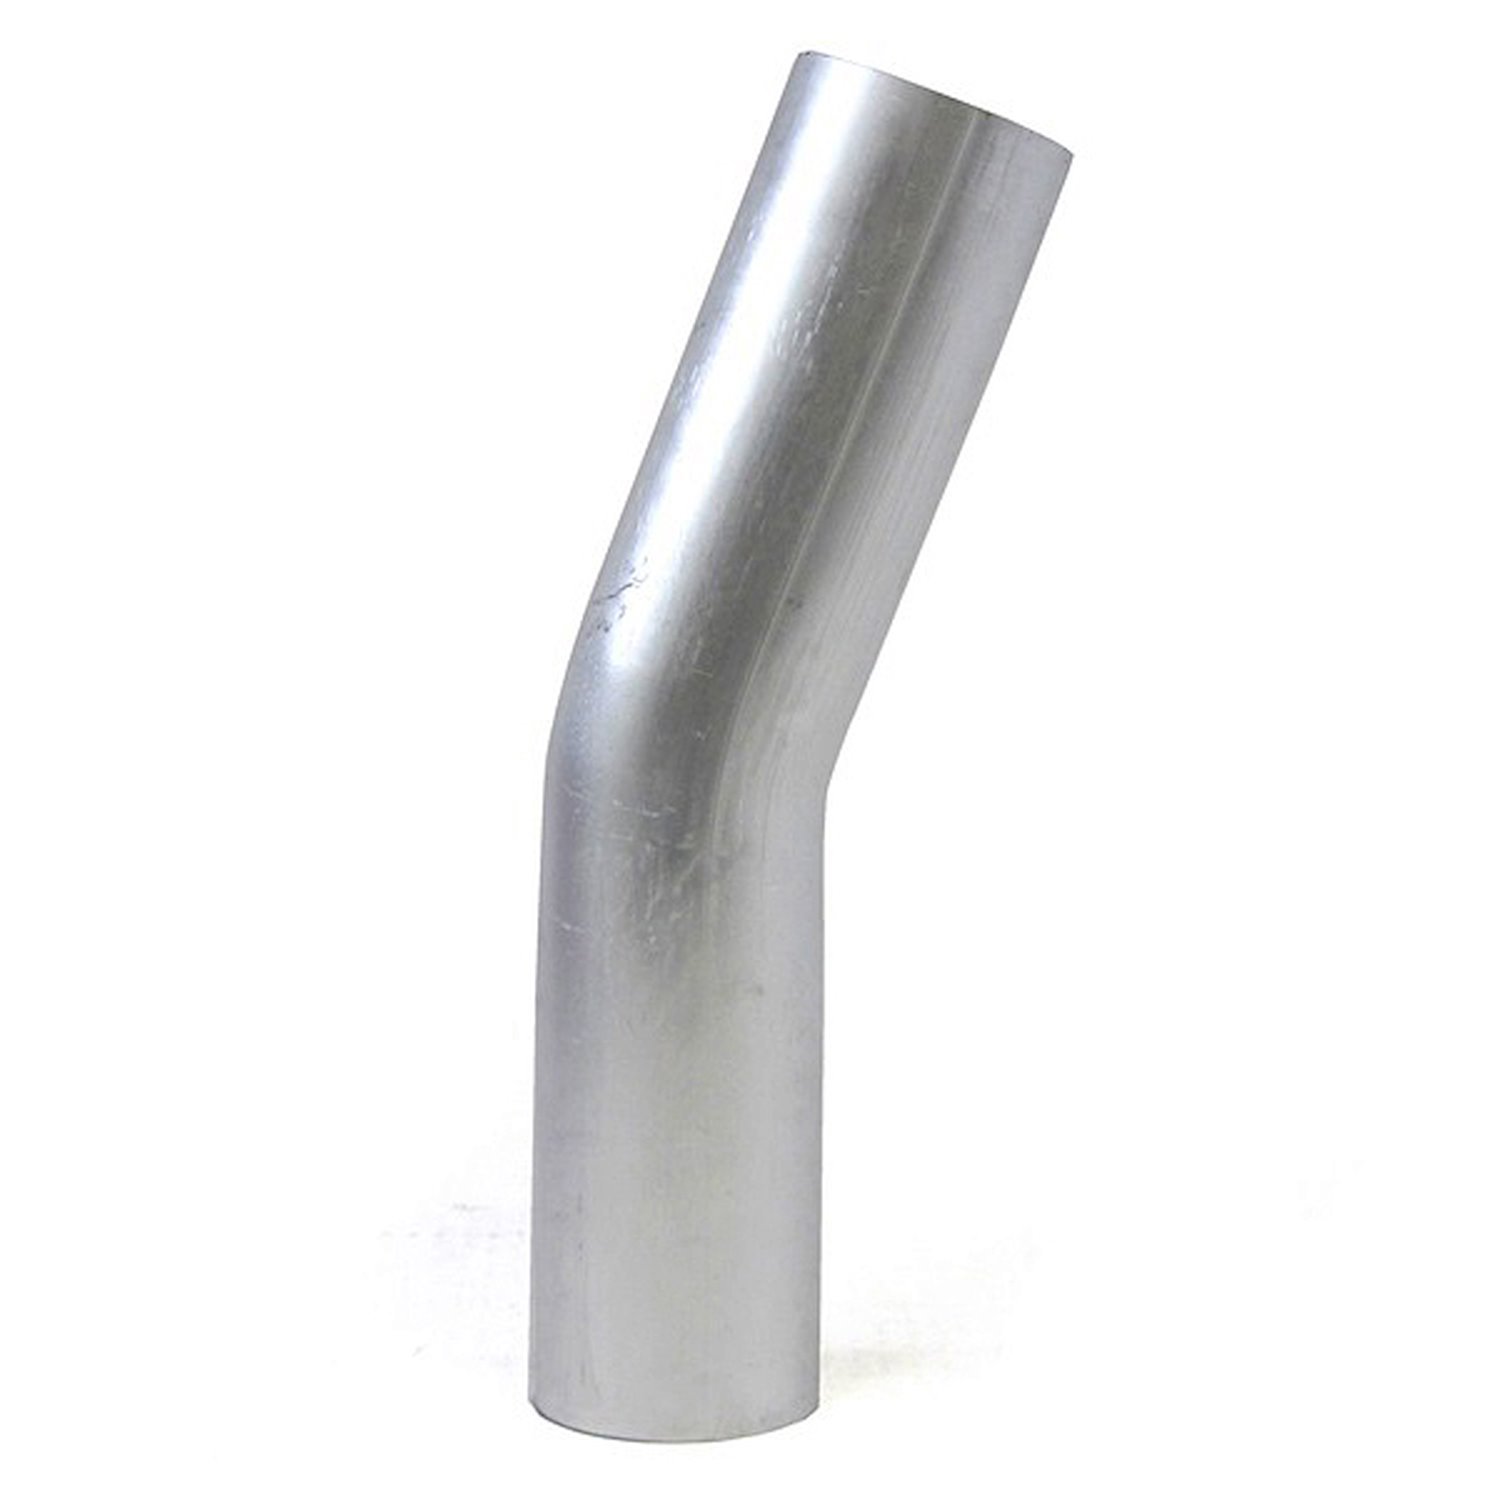 AT20-400-CLR-55 Aluminum Elbow Tube, 6061 Aluminum, 20-Degree Bend Elbow Tubing, 4 in. OD, Large Radius, 5-1/2 in. CLR